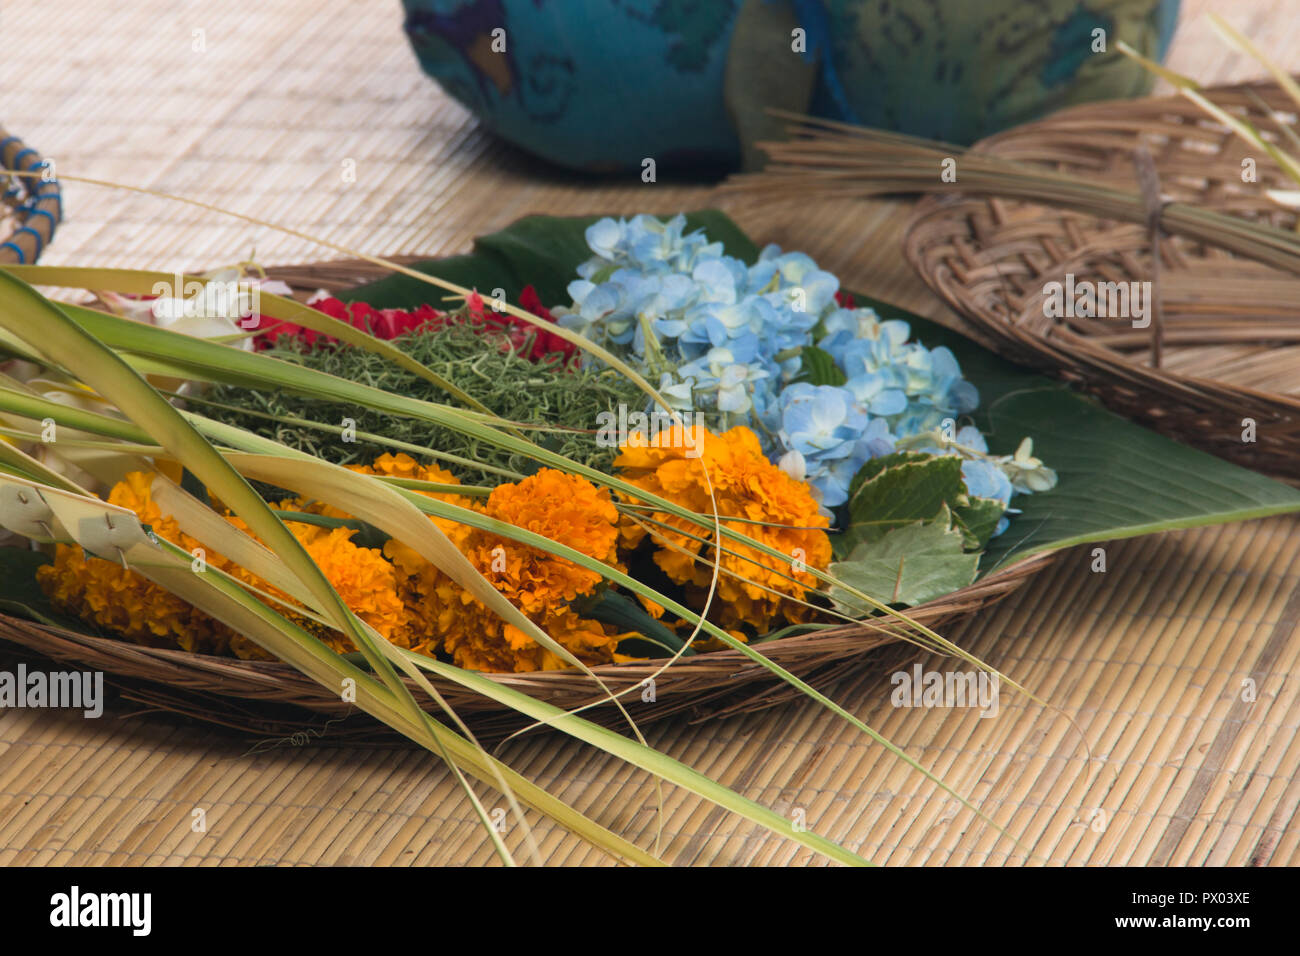 Le donne di Bali, Indonesia preparare le offerte giornaliere con cibo e fiori Foto Stock